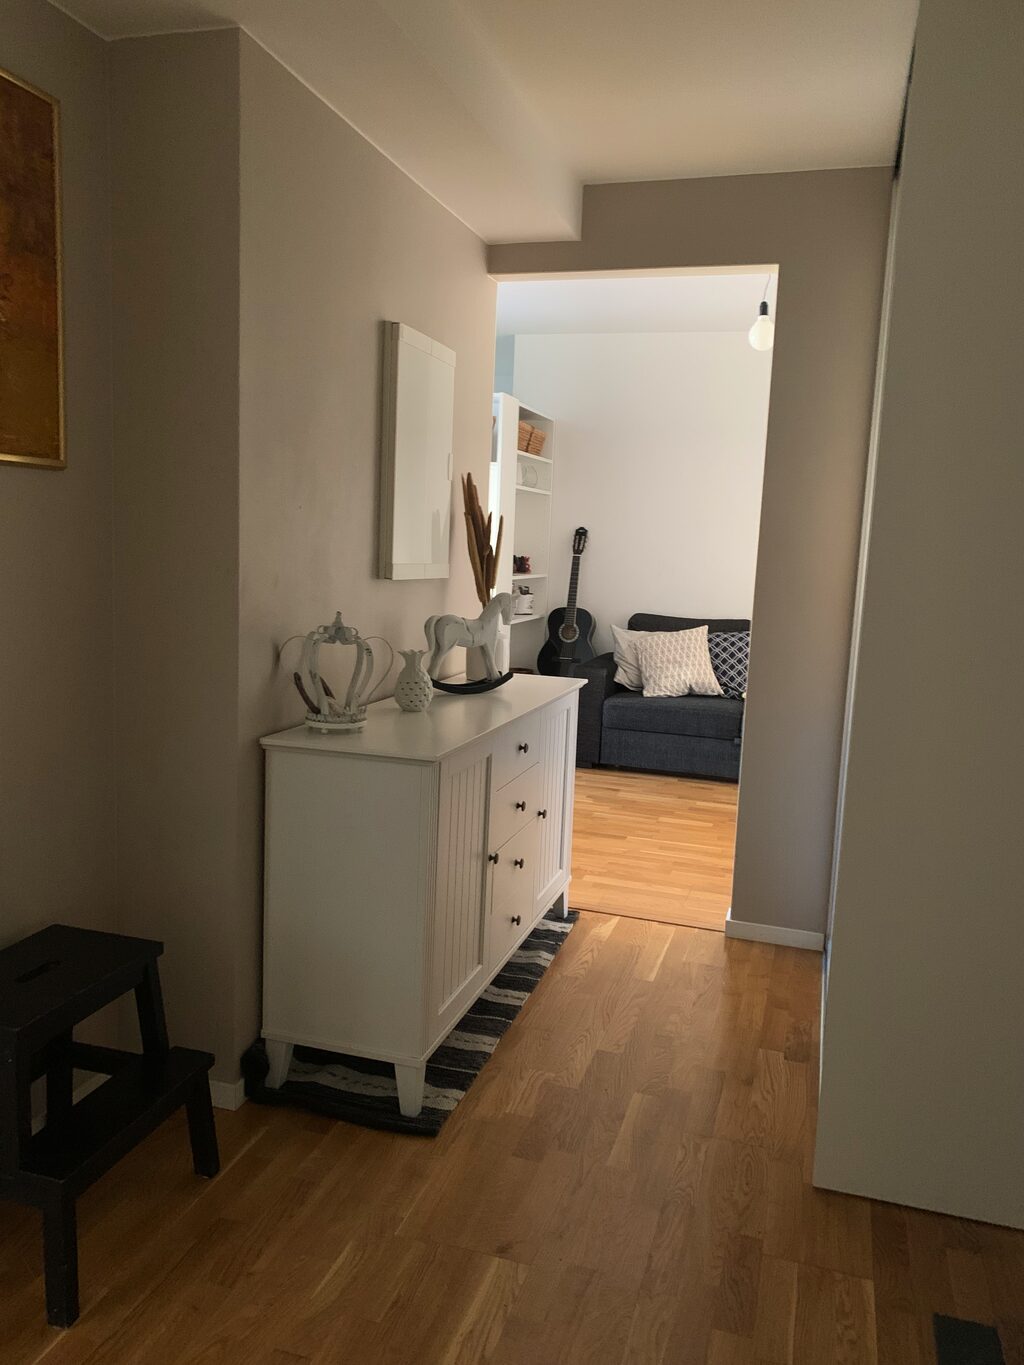 Lägenhetsbyte - Lina Sandells plan 1